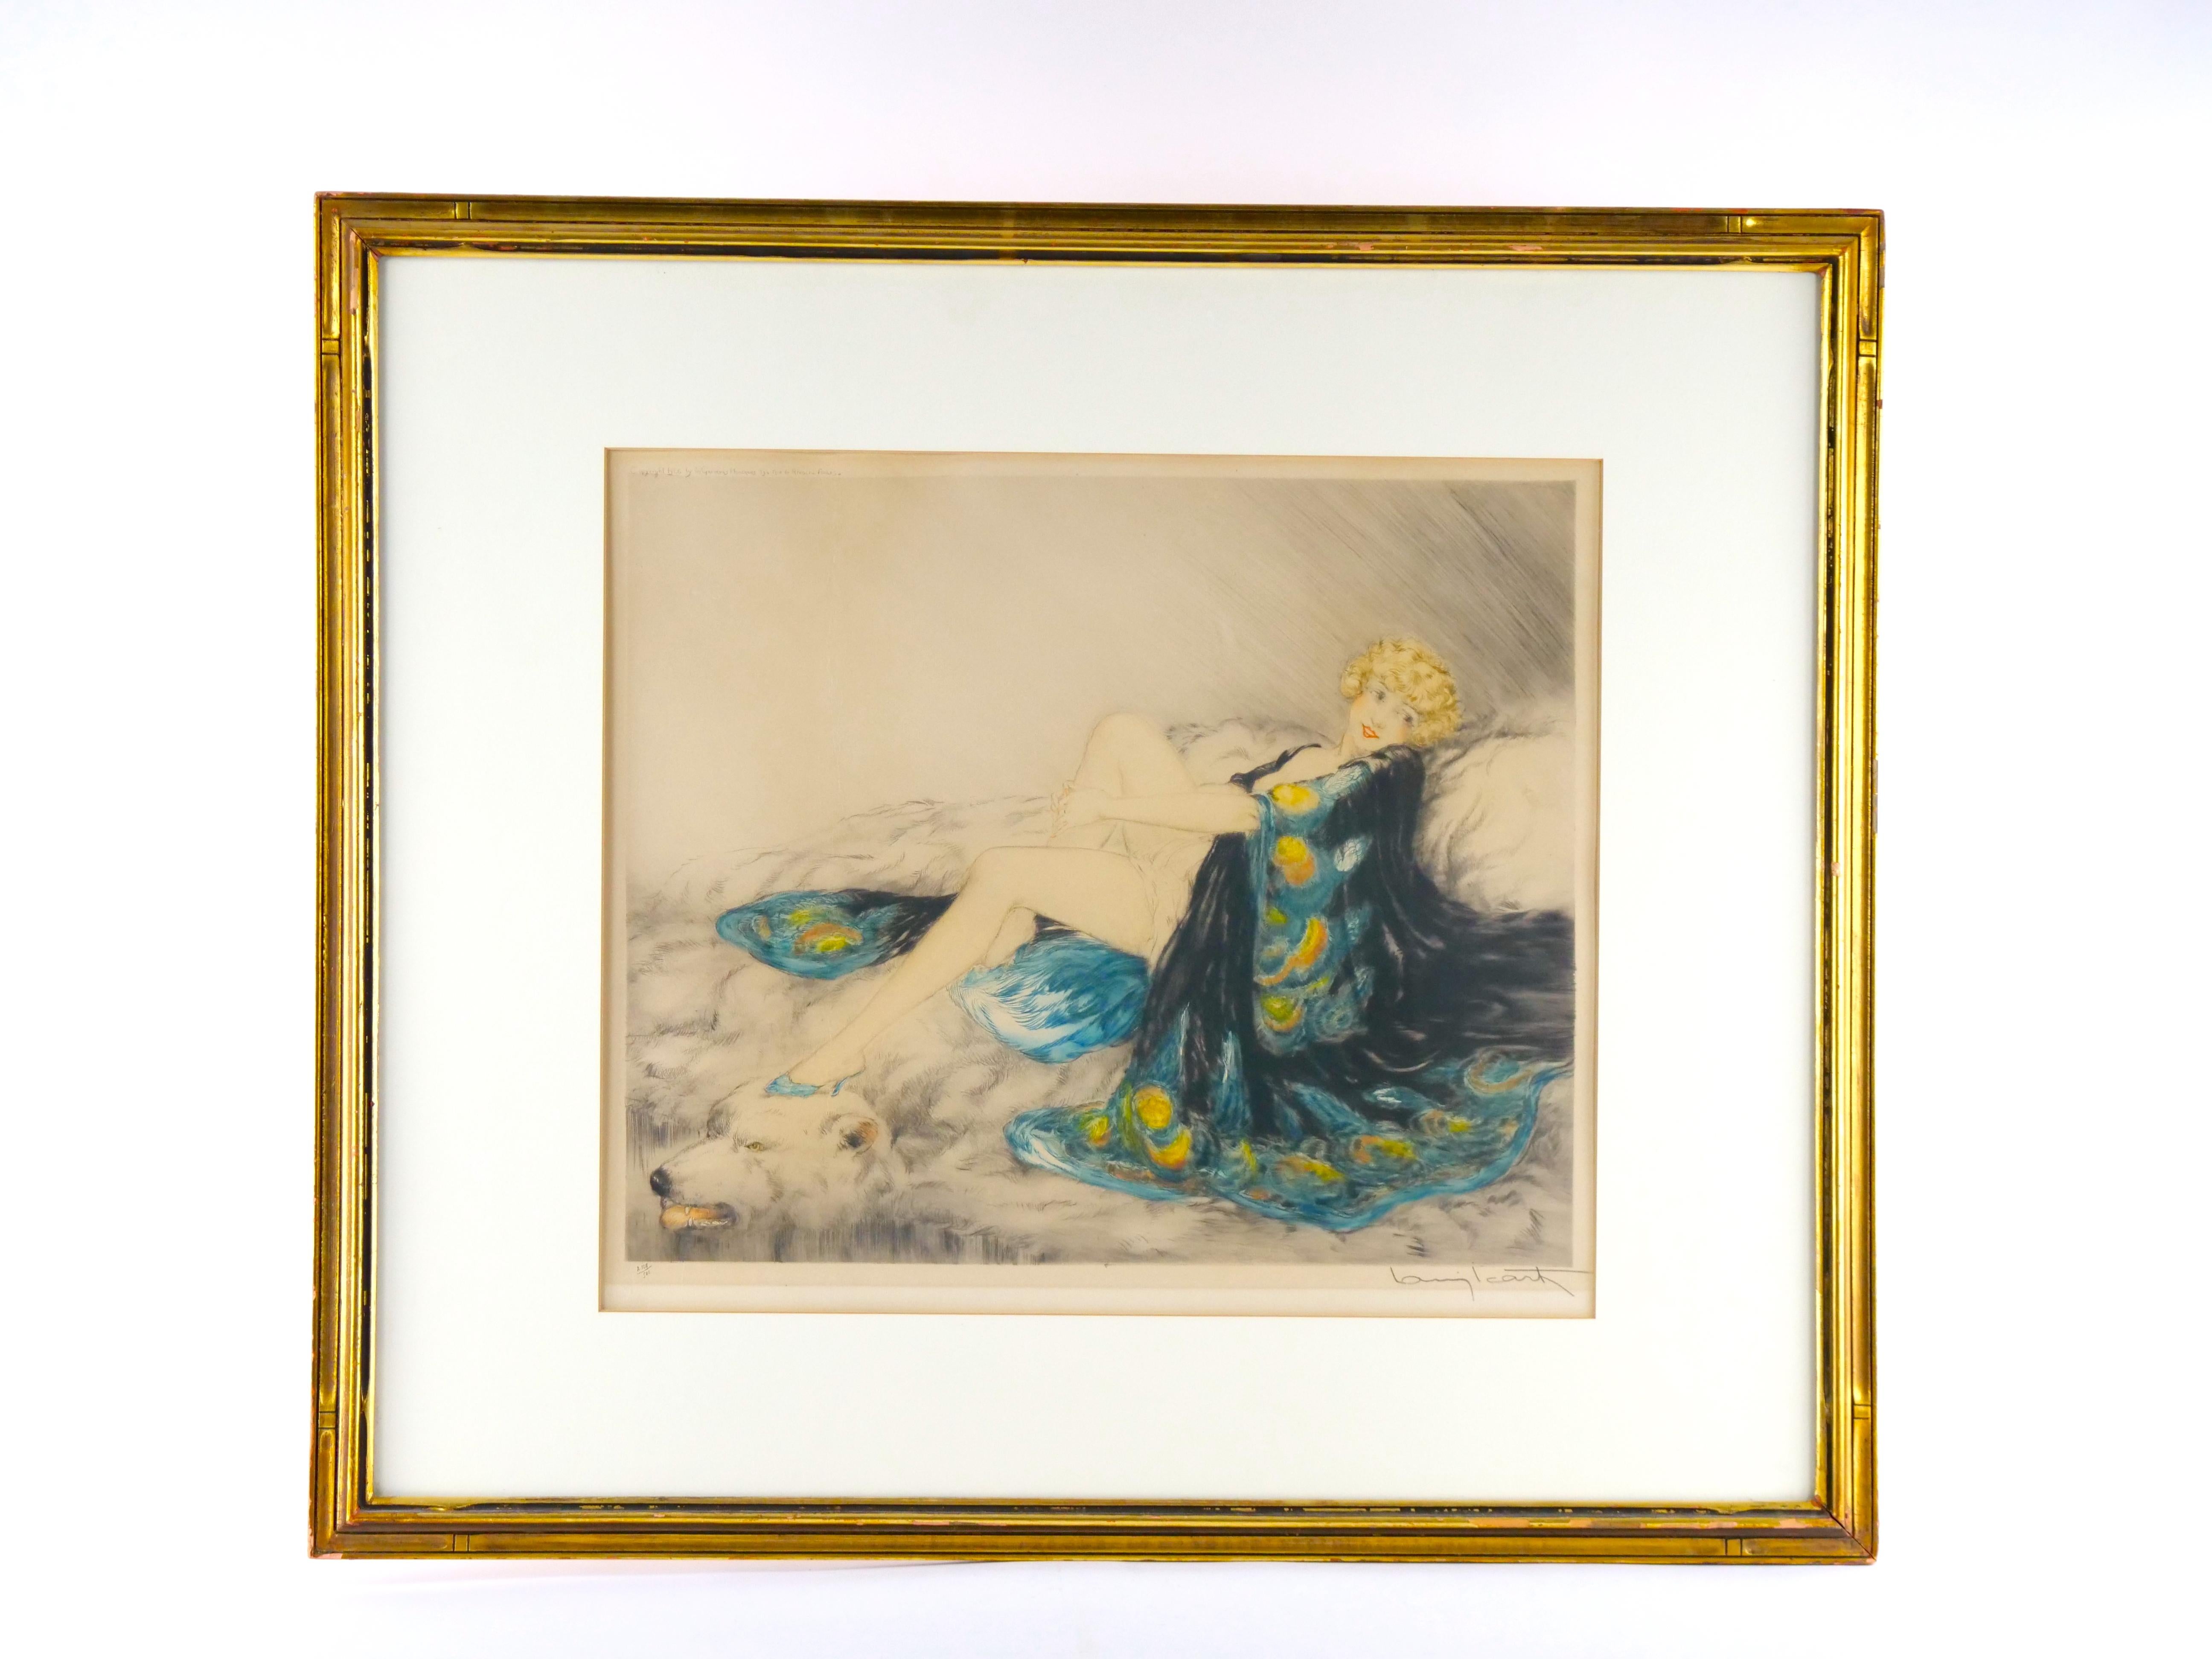 Gravure à l'eau-forte de Louis Icart (1888-1950) représentant une jolie blonde en lingerie de paon drapée sur un tapis en peau d'ours polaire.  Numéro 108 sur 500.  Signé à la main au crayon par l'artiste.  Maté et encadré dans un cadre en bois doré